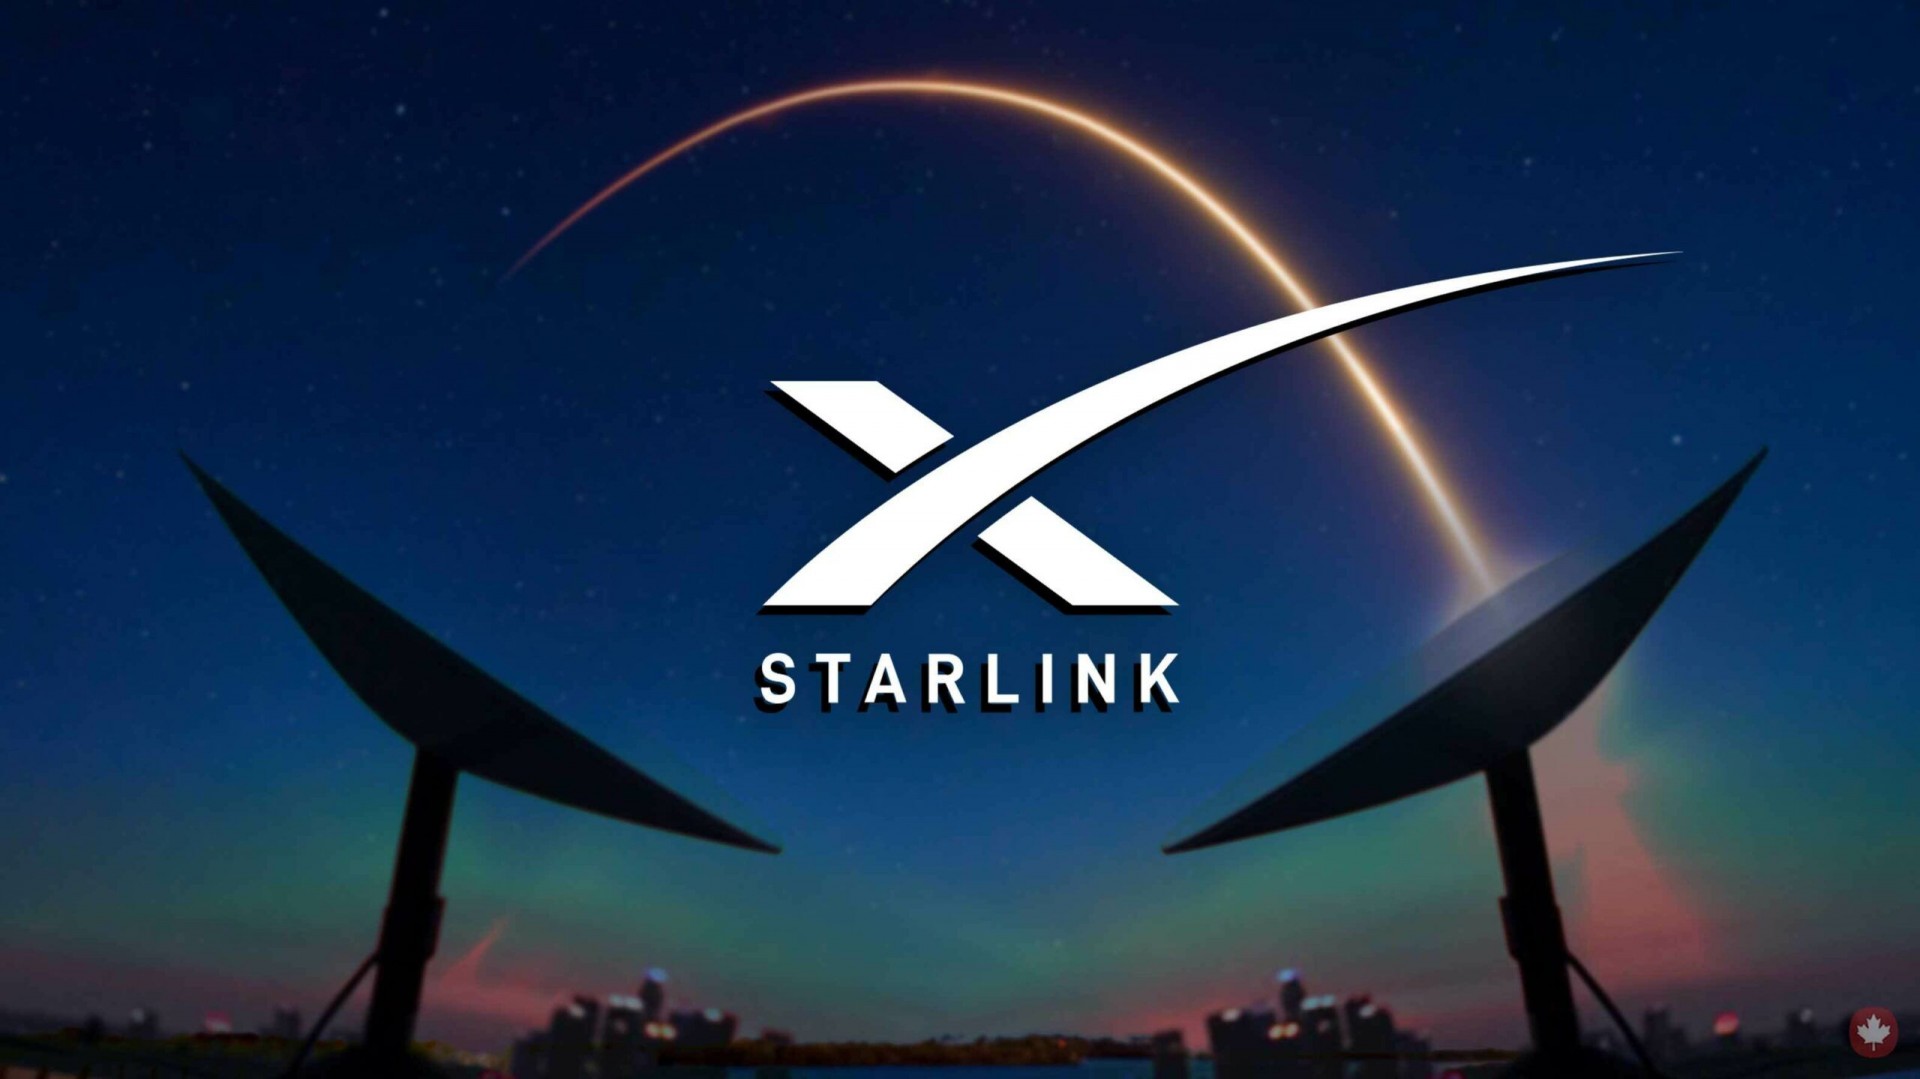 Capai Resolusi, SpaceX Berencana Hadirkan Koneksi Internet Starlink ke Ponsel